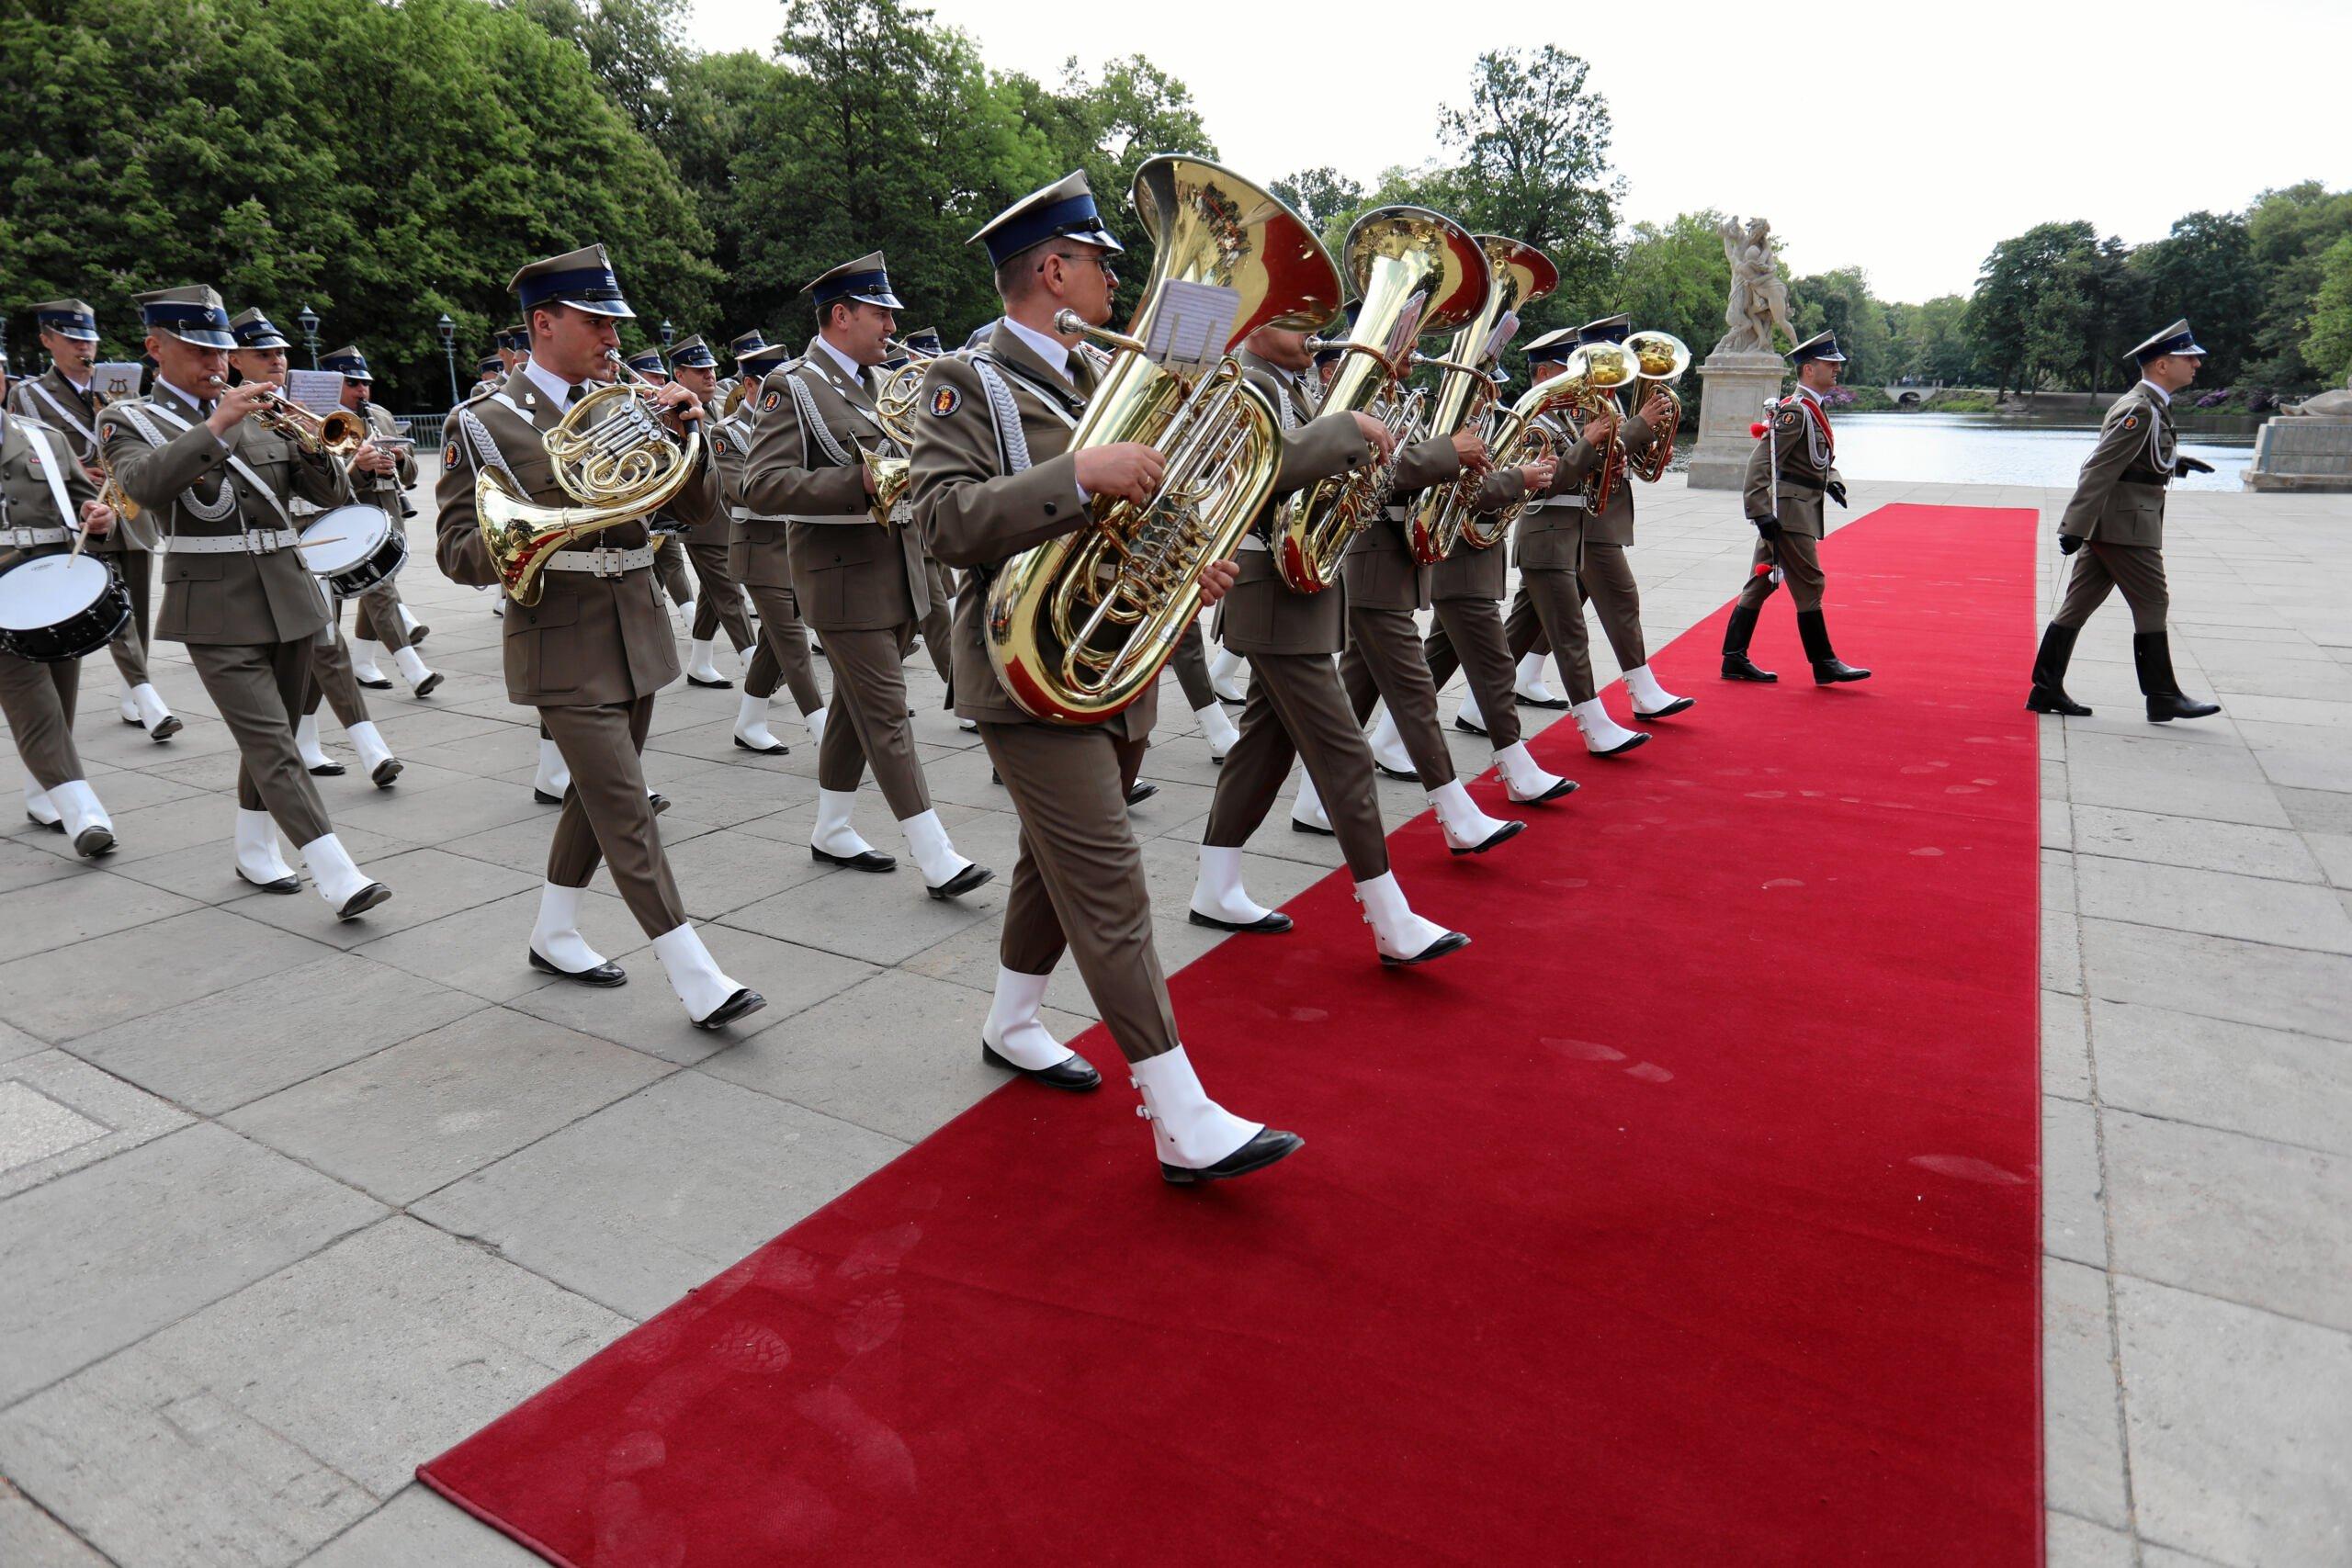 Żołnierze z orkiestry wojskowej wchodzą na czerwony dywan marszowym krokiem